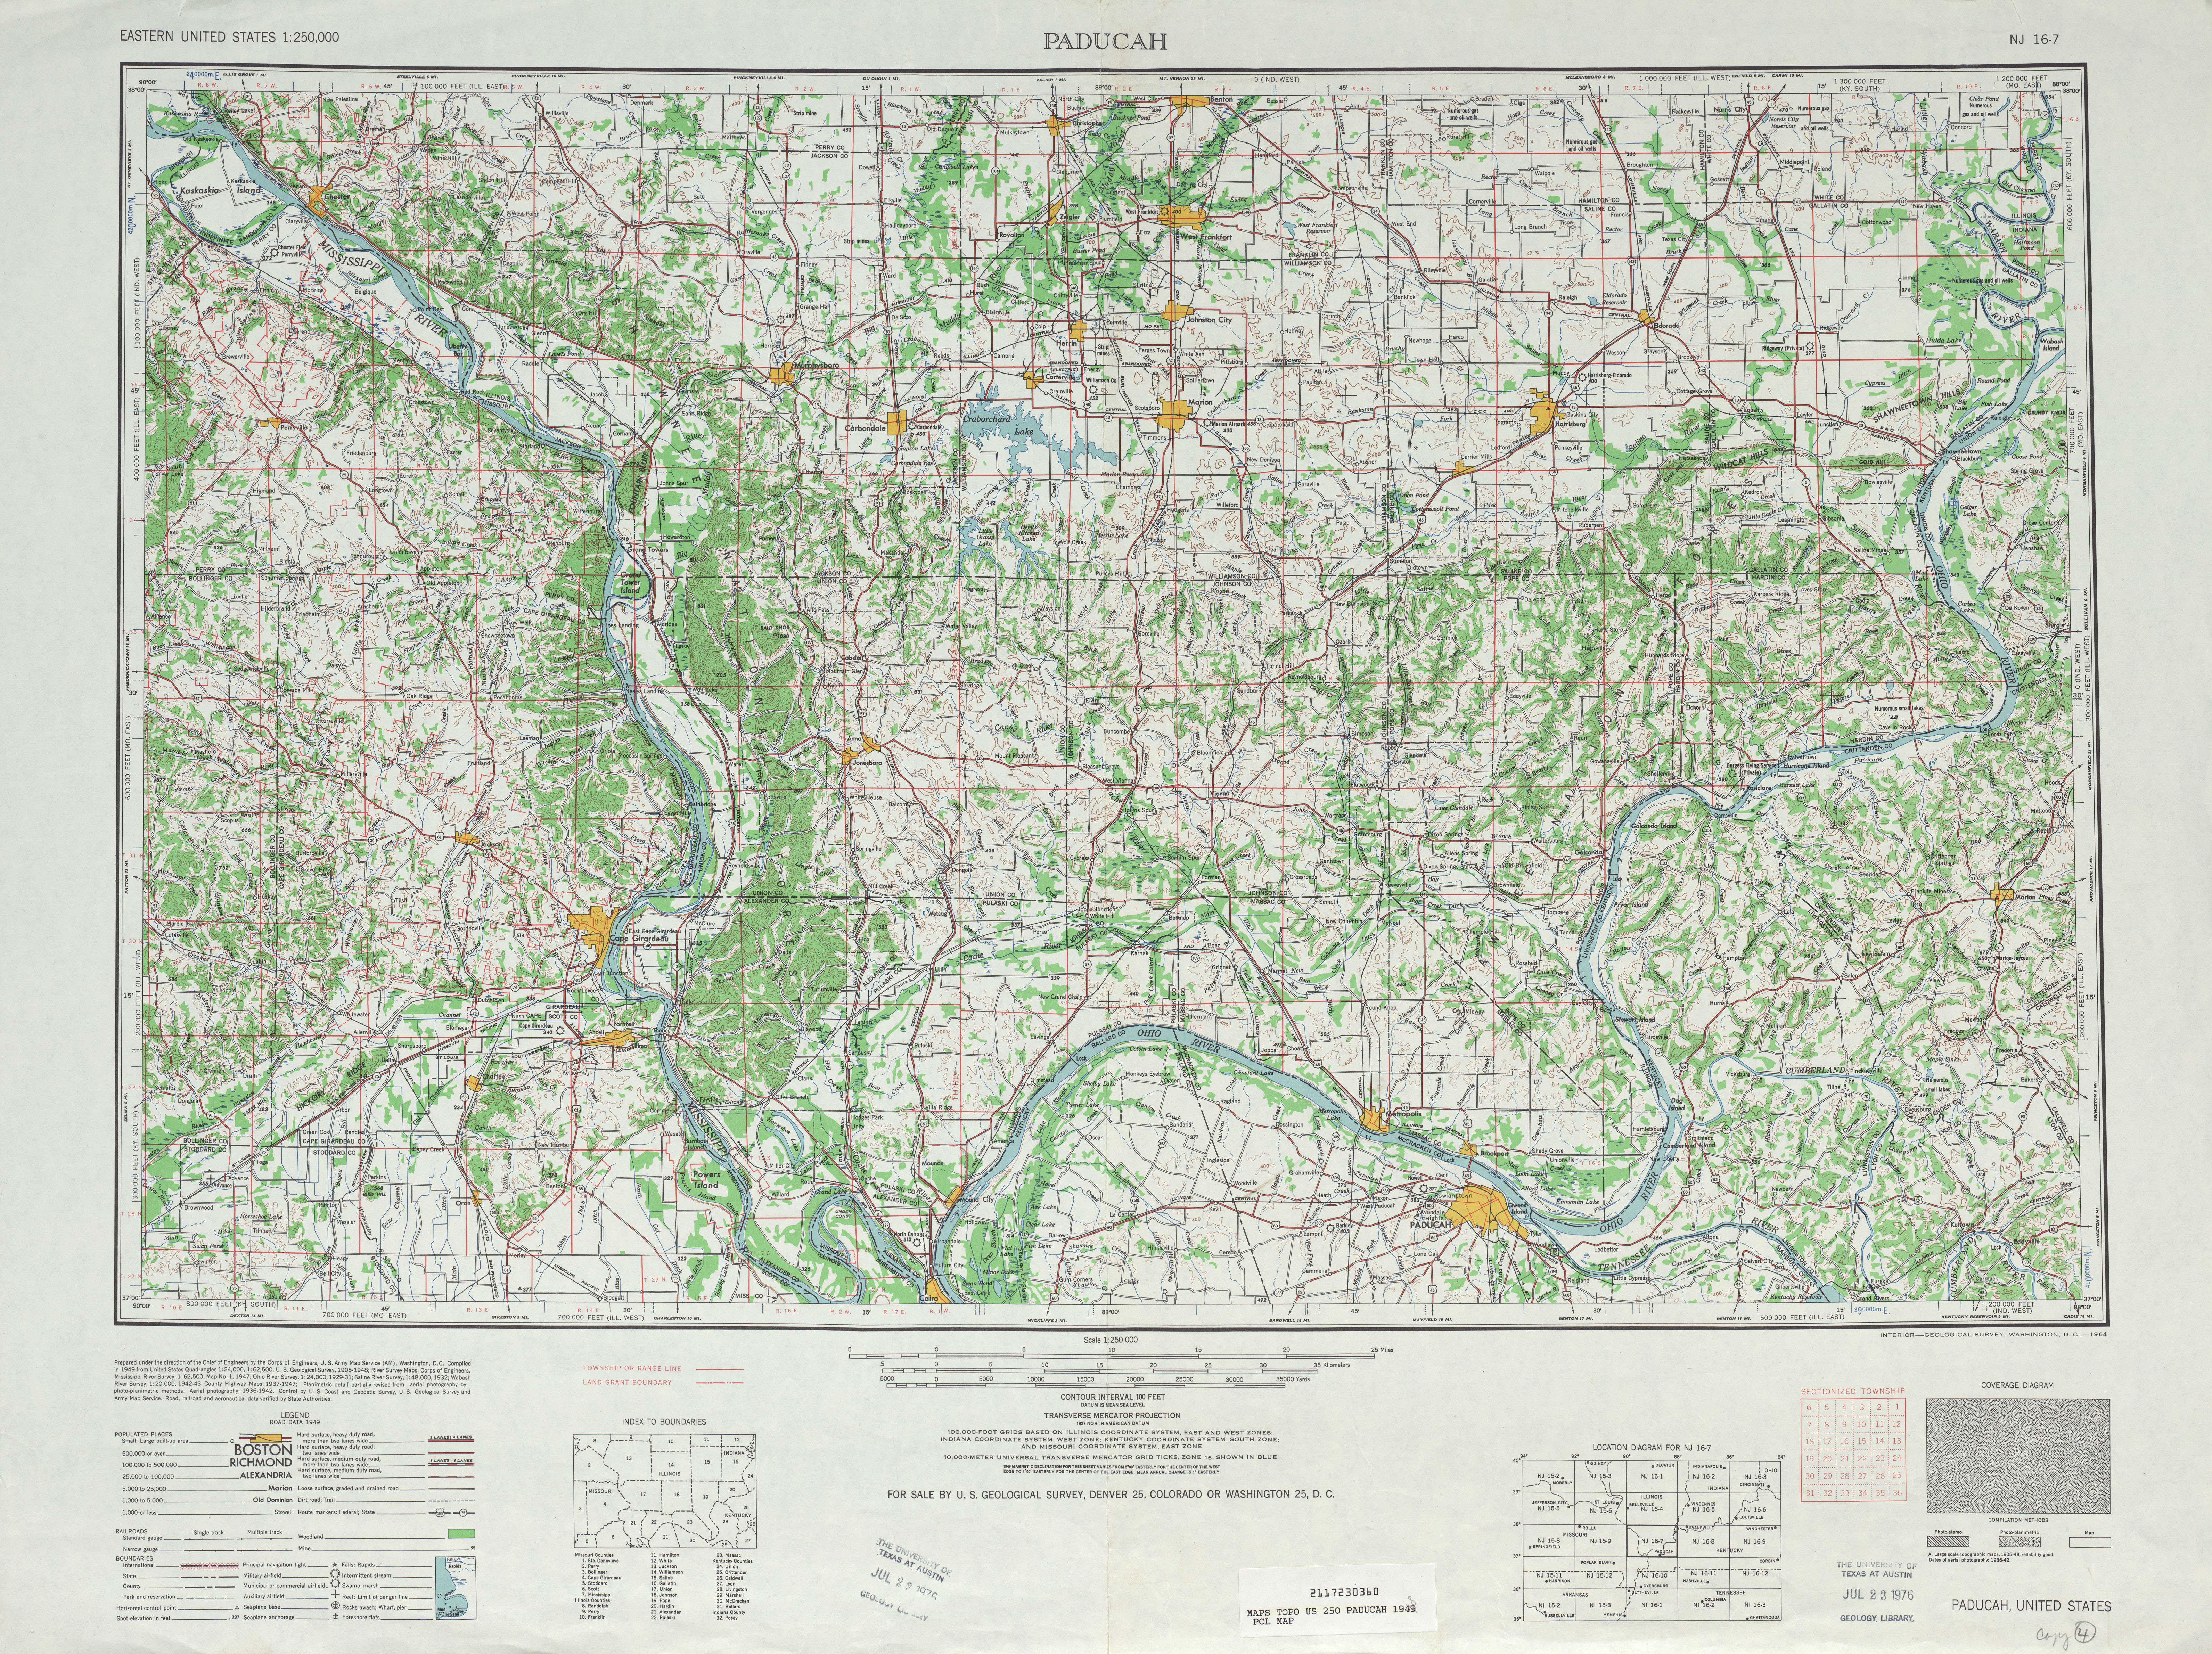 Hoja Paducah del Mapa Topográfico de los Estados Unidos 1948